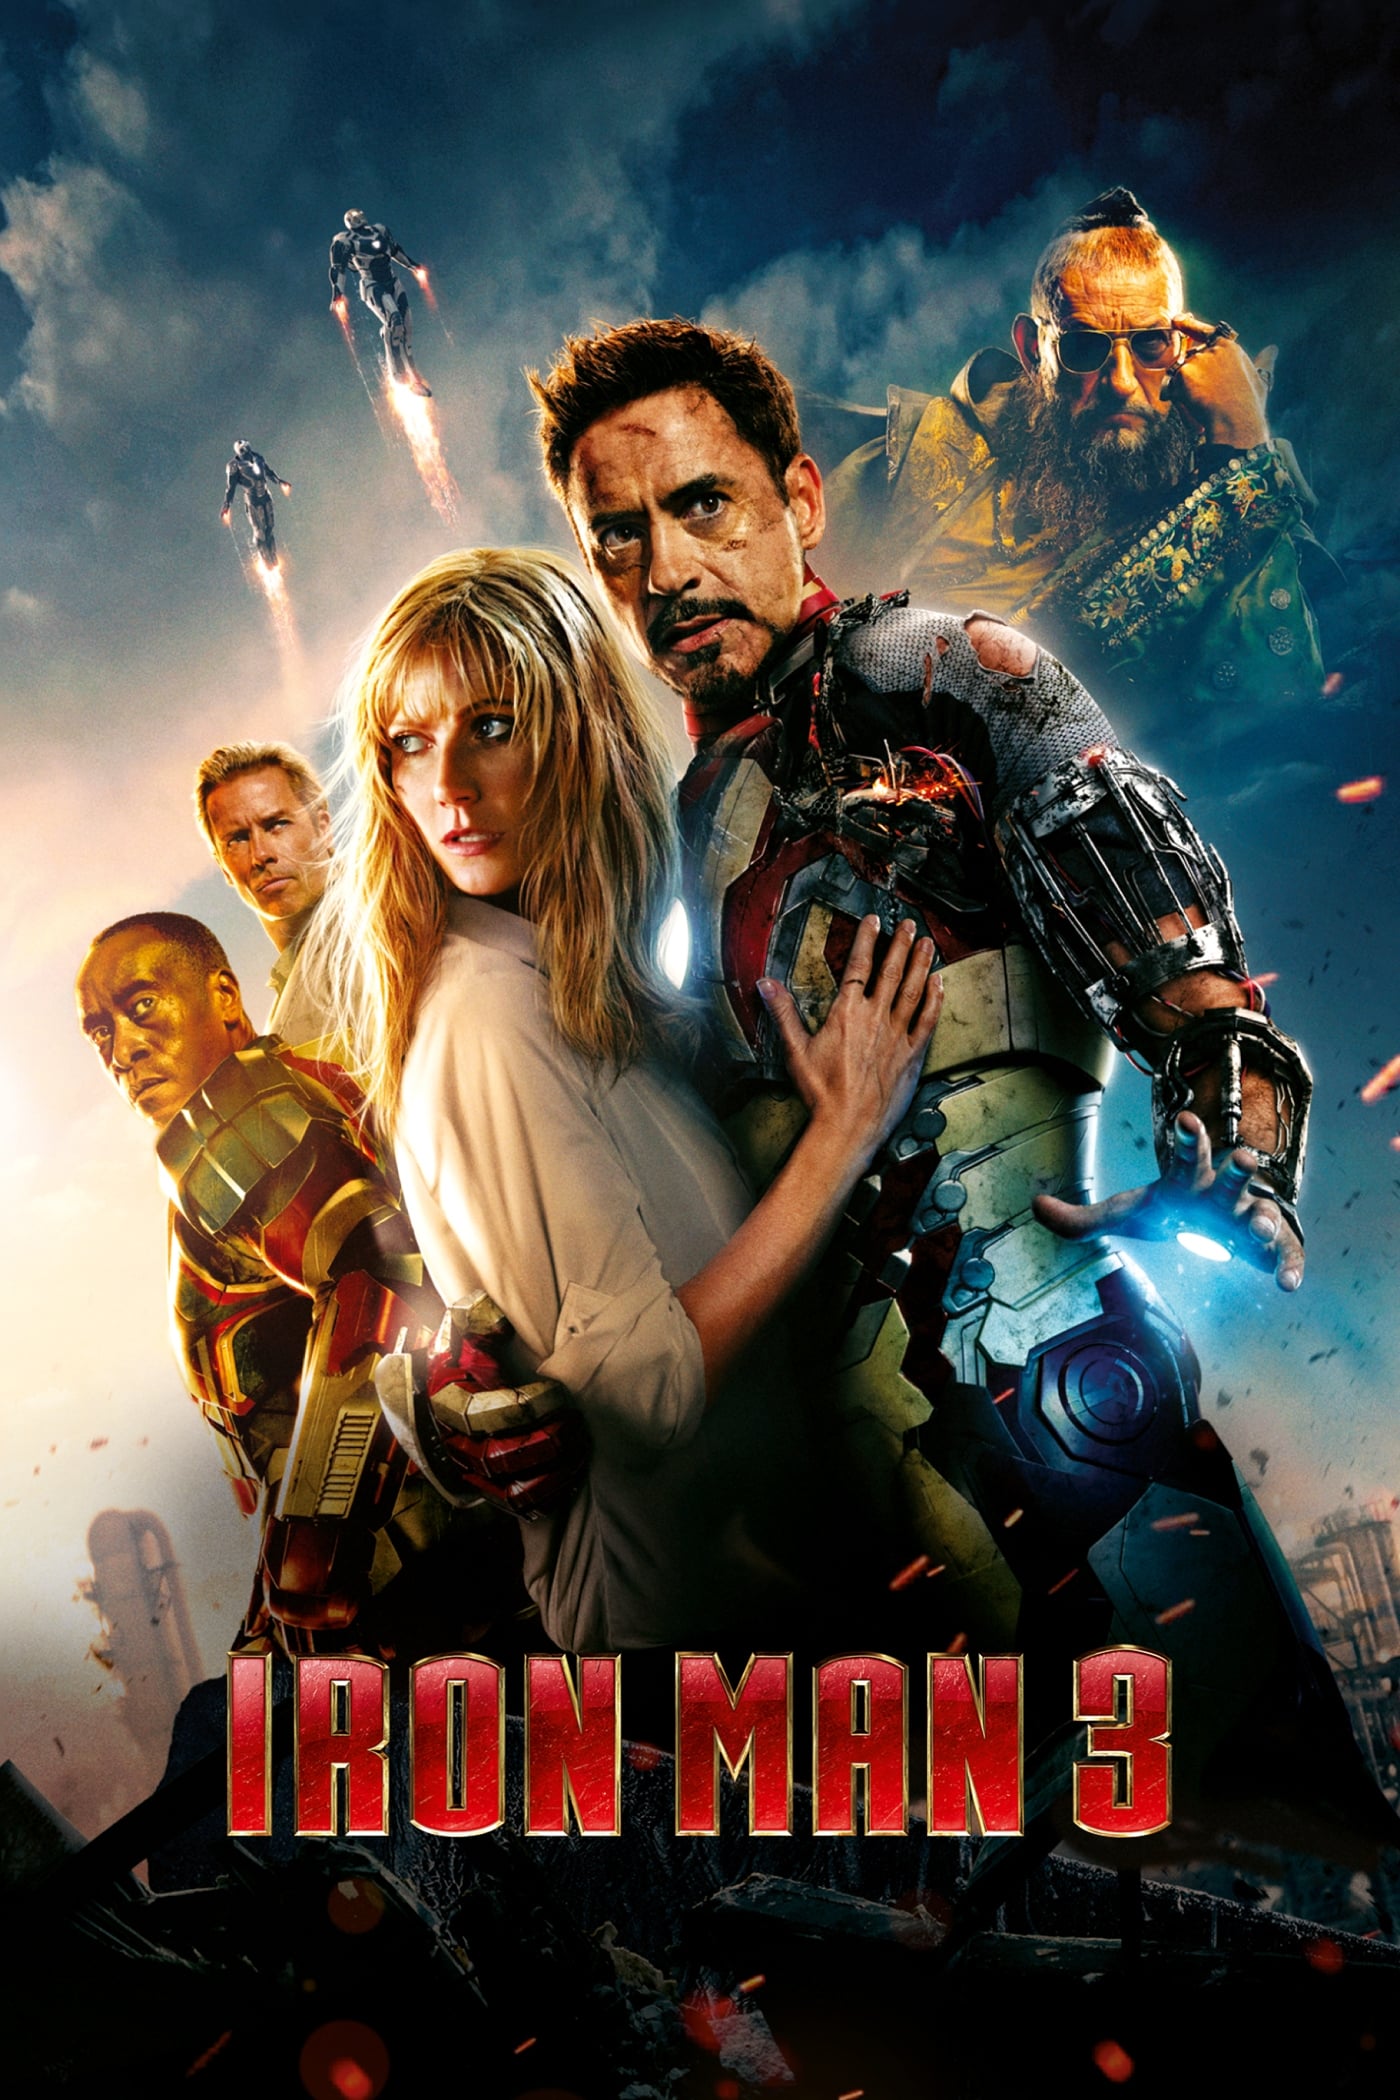 Homem de Ferro 3 (2013)